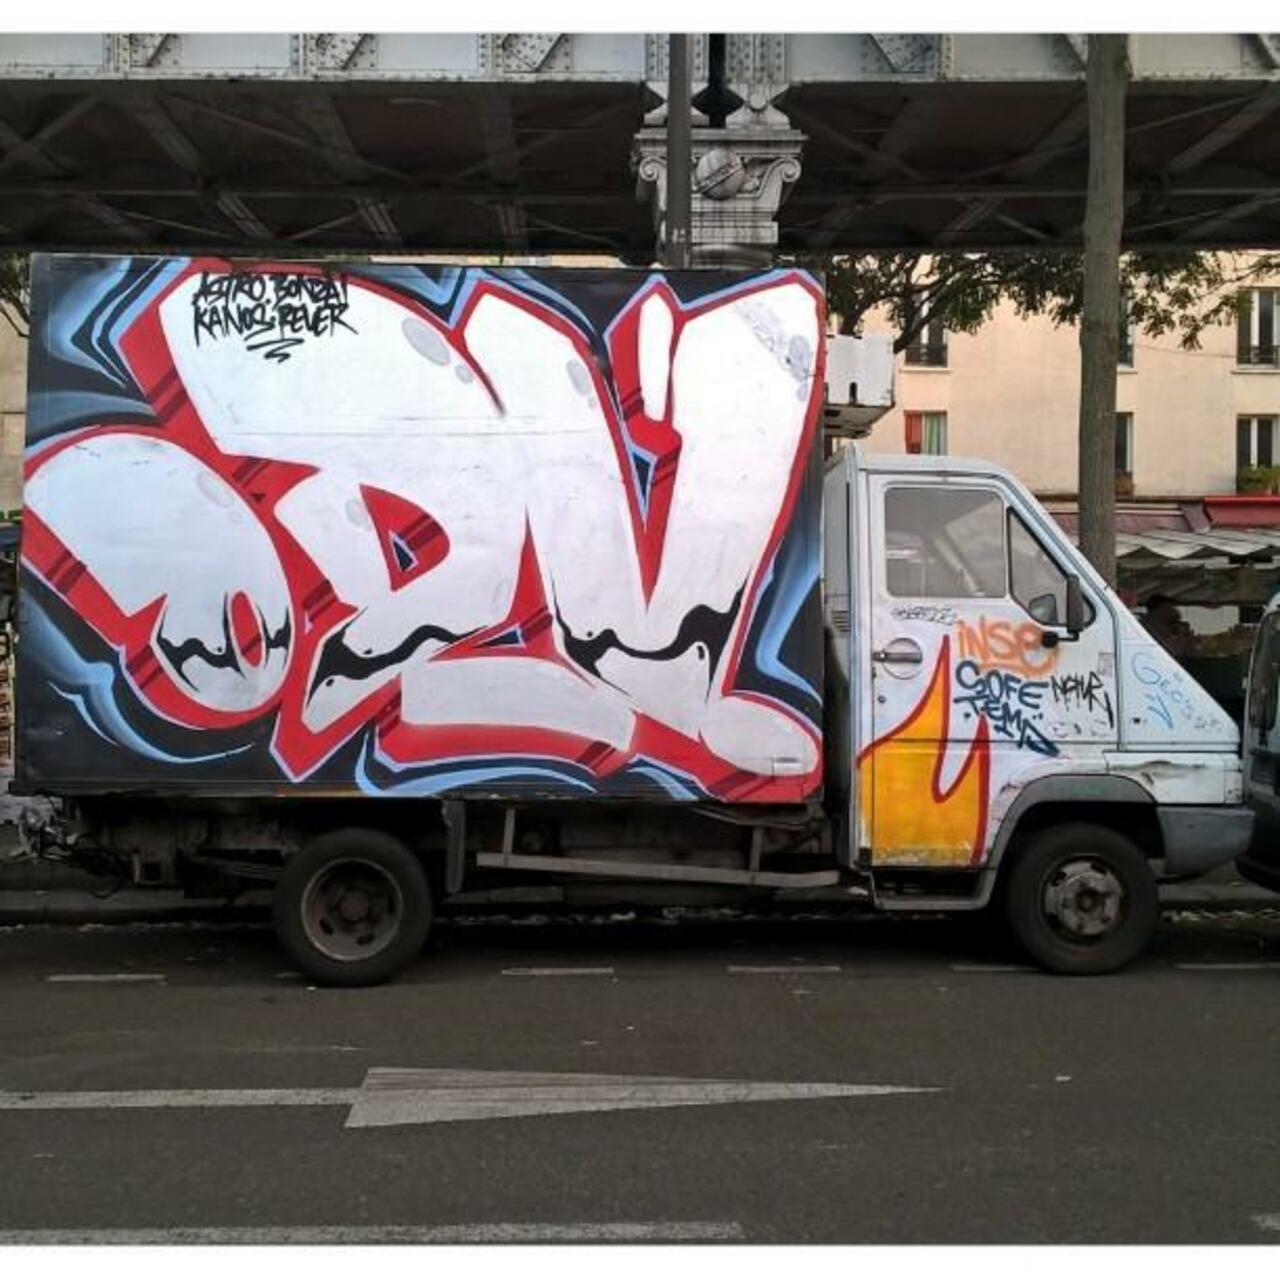 ODV
#ODVcrew #camtar #camionsparisiens #trucks_of_art #graffititruck #truckart #streetart #graffiti #graff #art #fa… http://t.co/y9eqvoPBr7